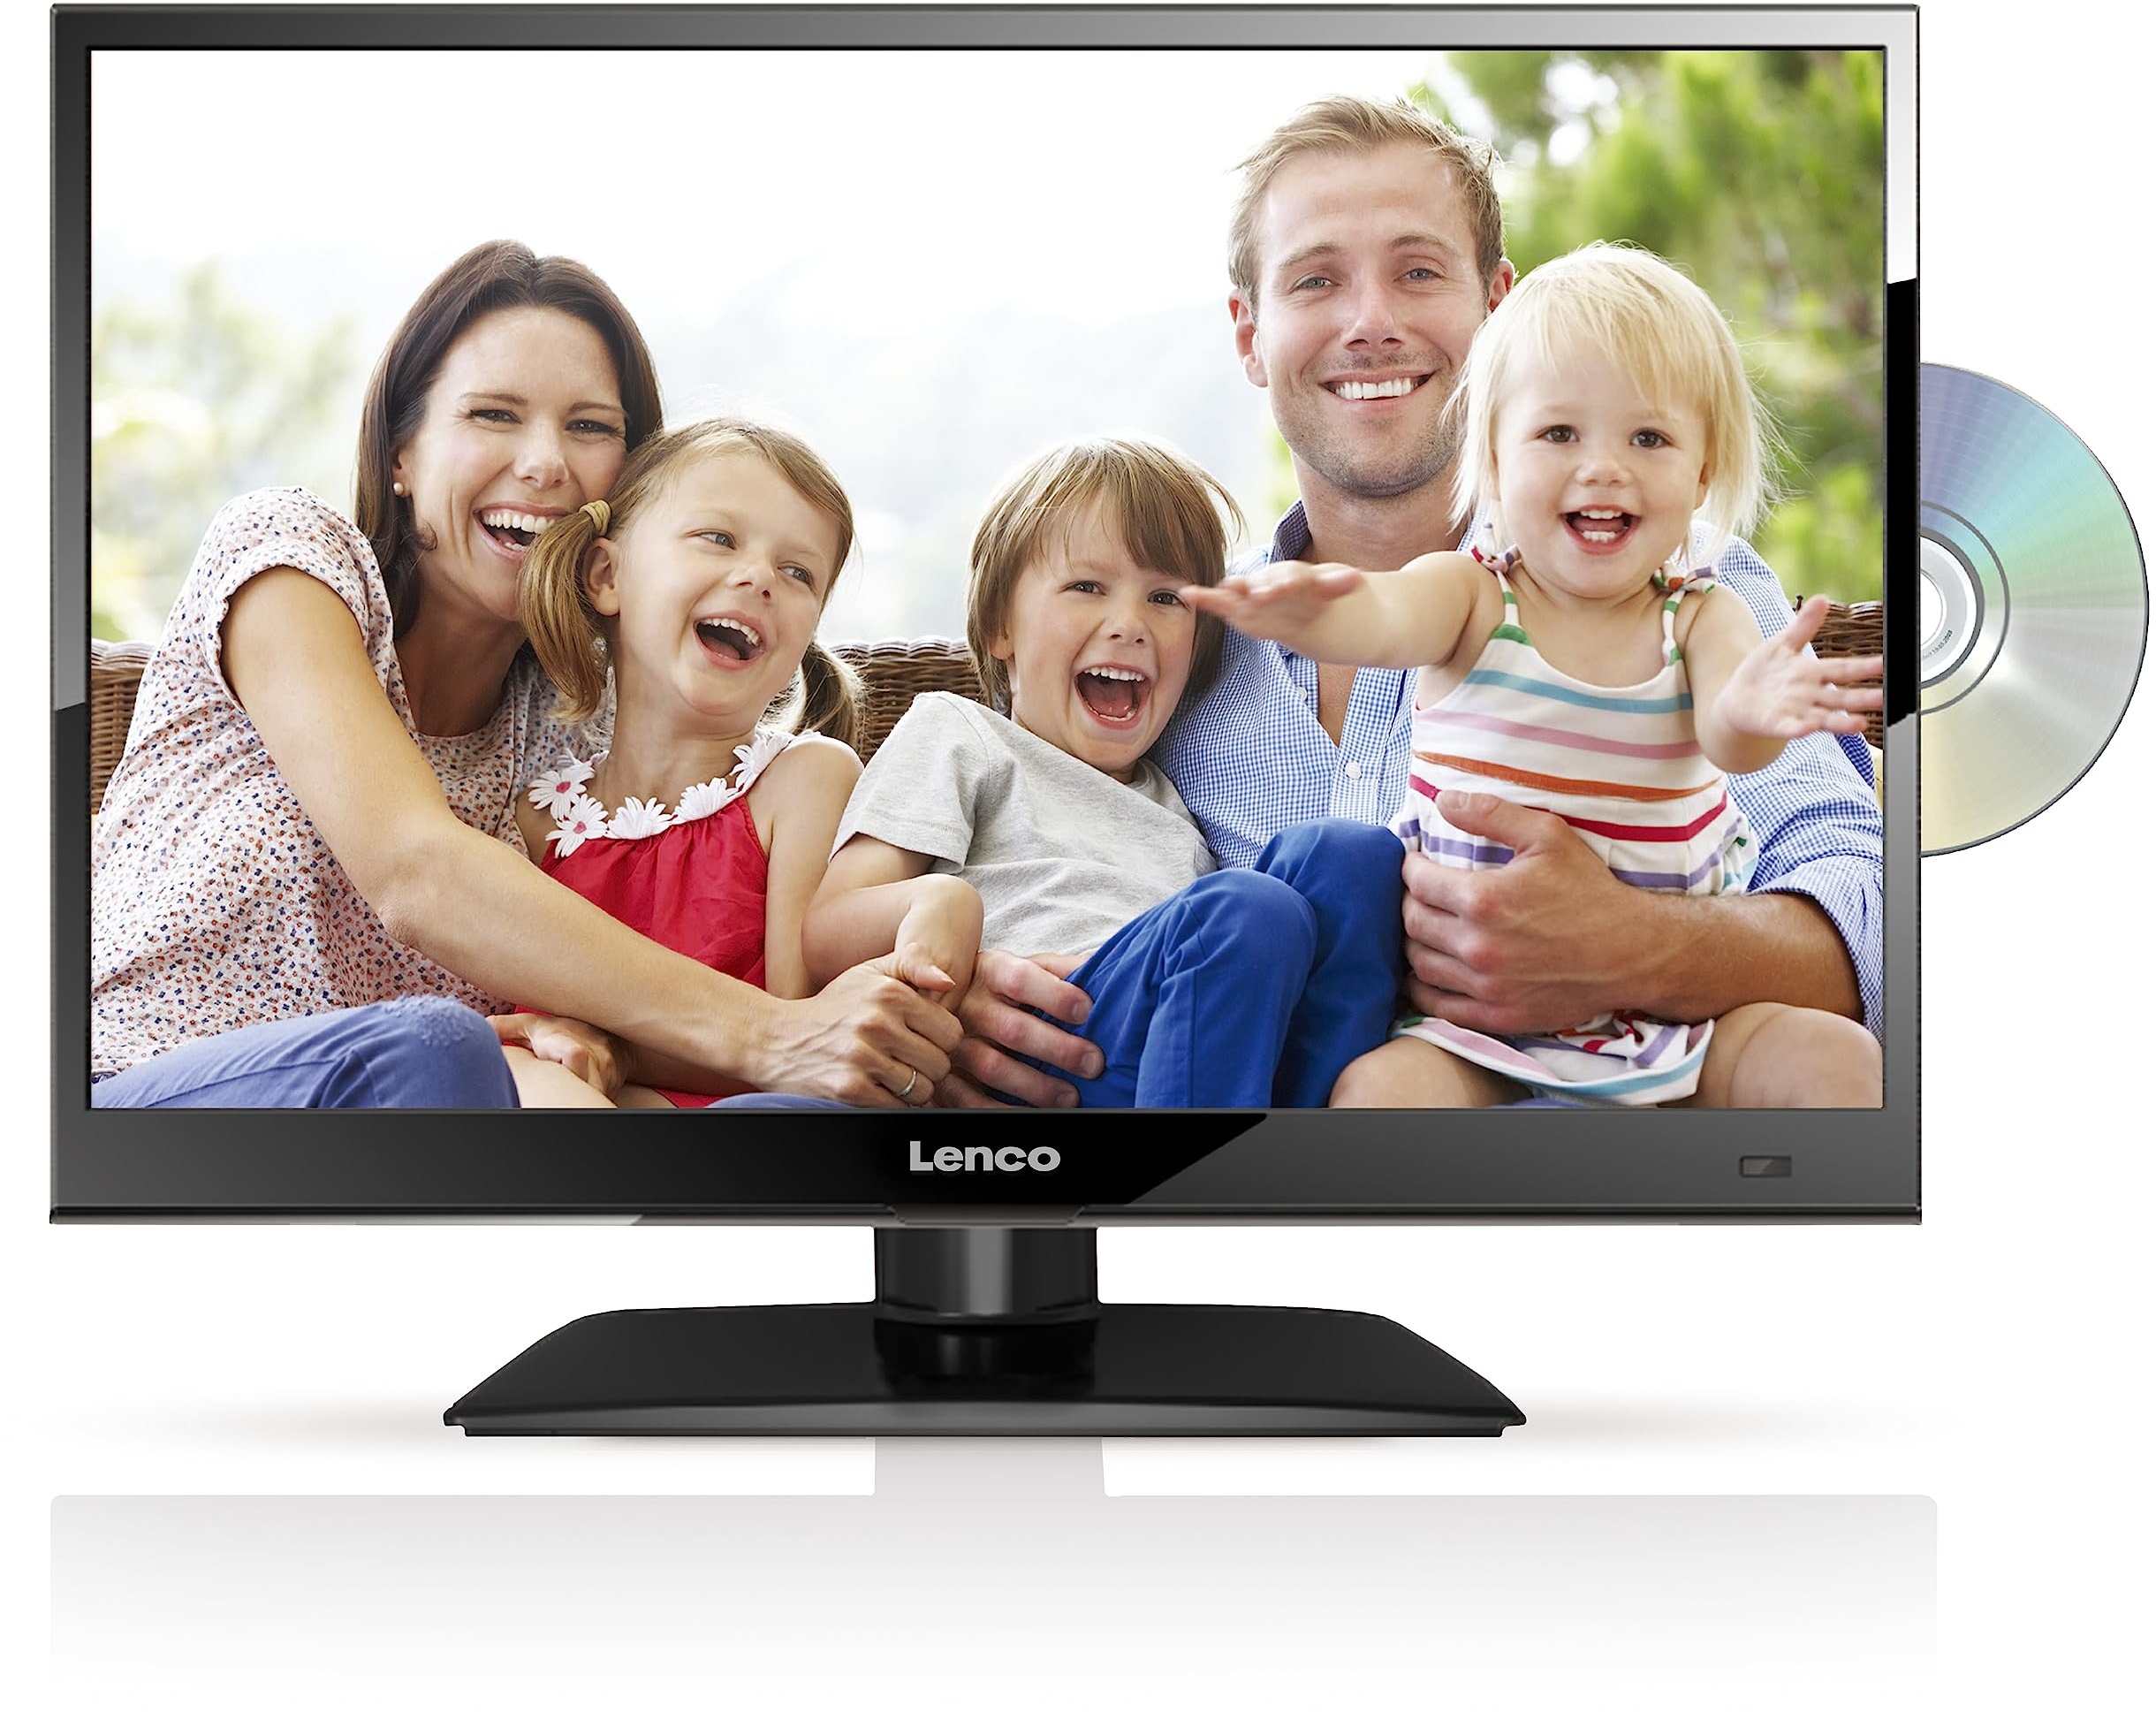 Lenco DVBT2 Fernseher DVL-1662BK 16 Zoll (40 cm) mit DVD-Player und 12 Volt Kfz-Adapter, Schwarz